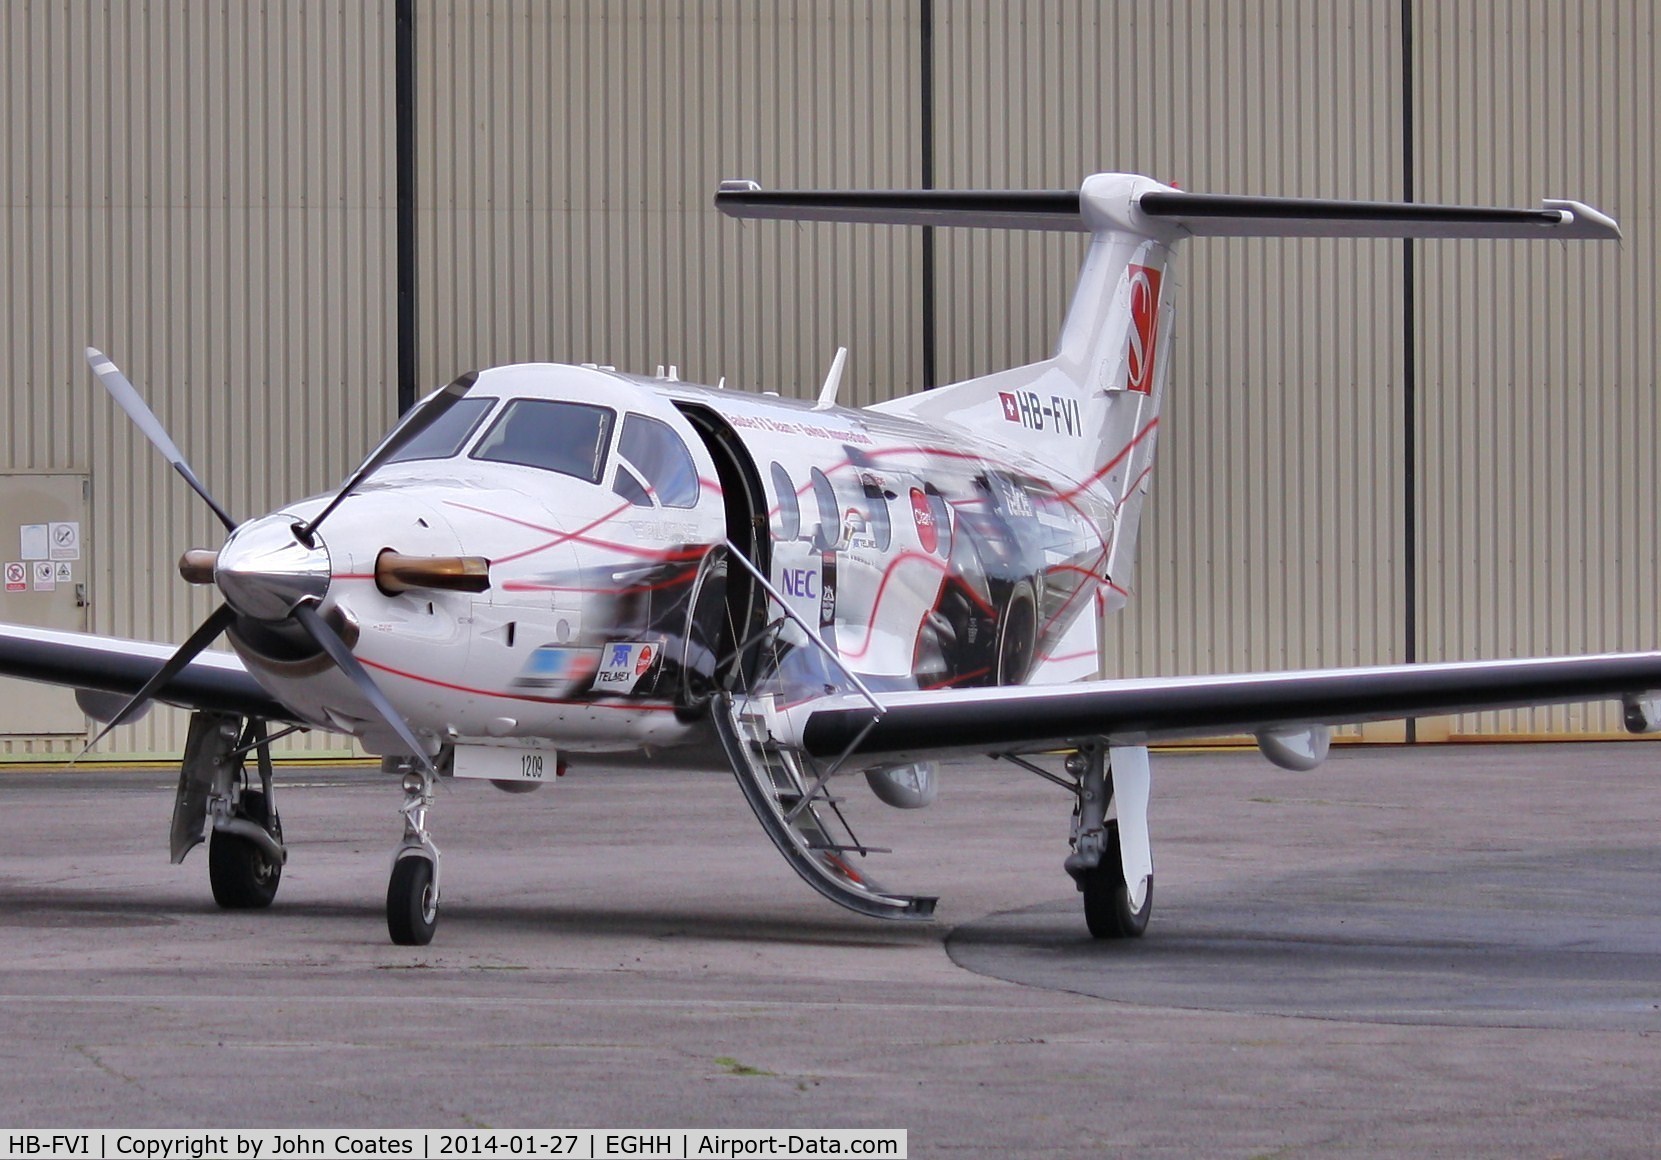 HB-FVI, 2010 Pilatus PC-12/47E C/N 1209, Preparing to depart